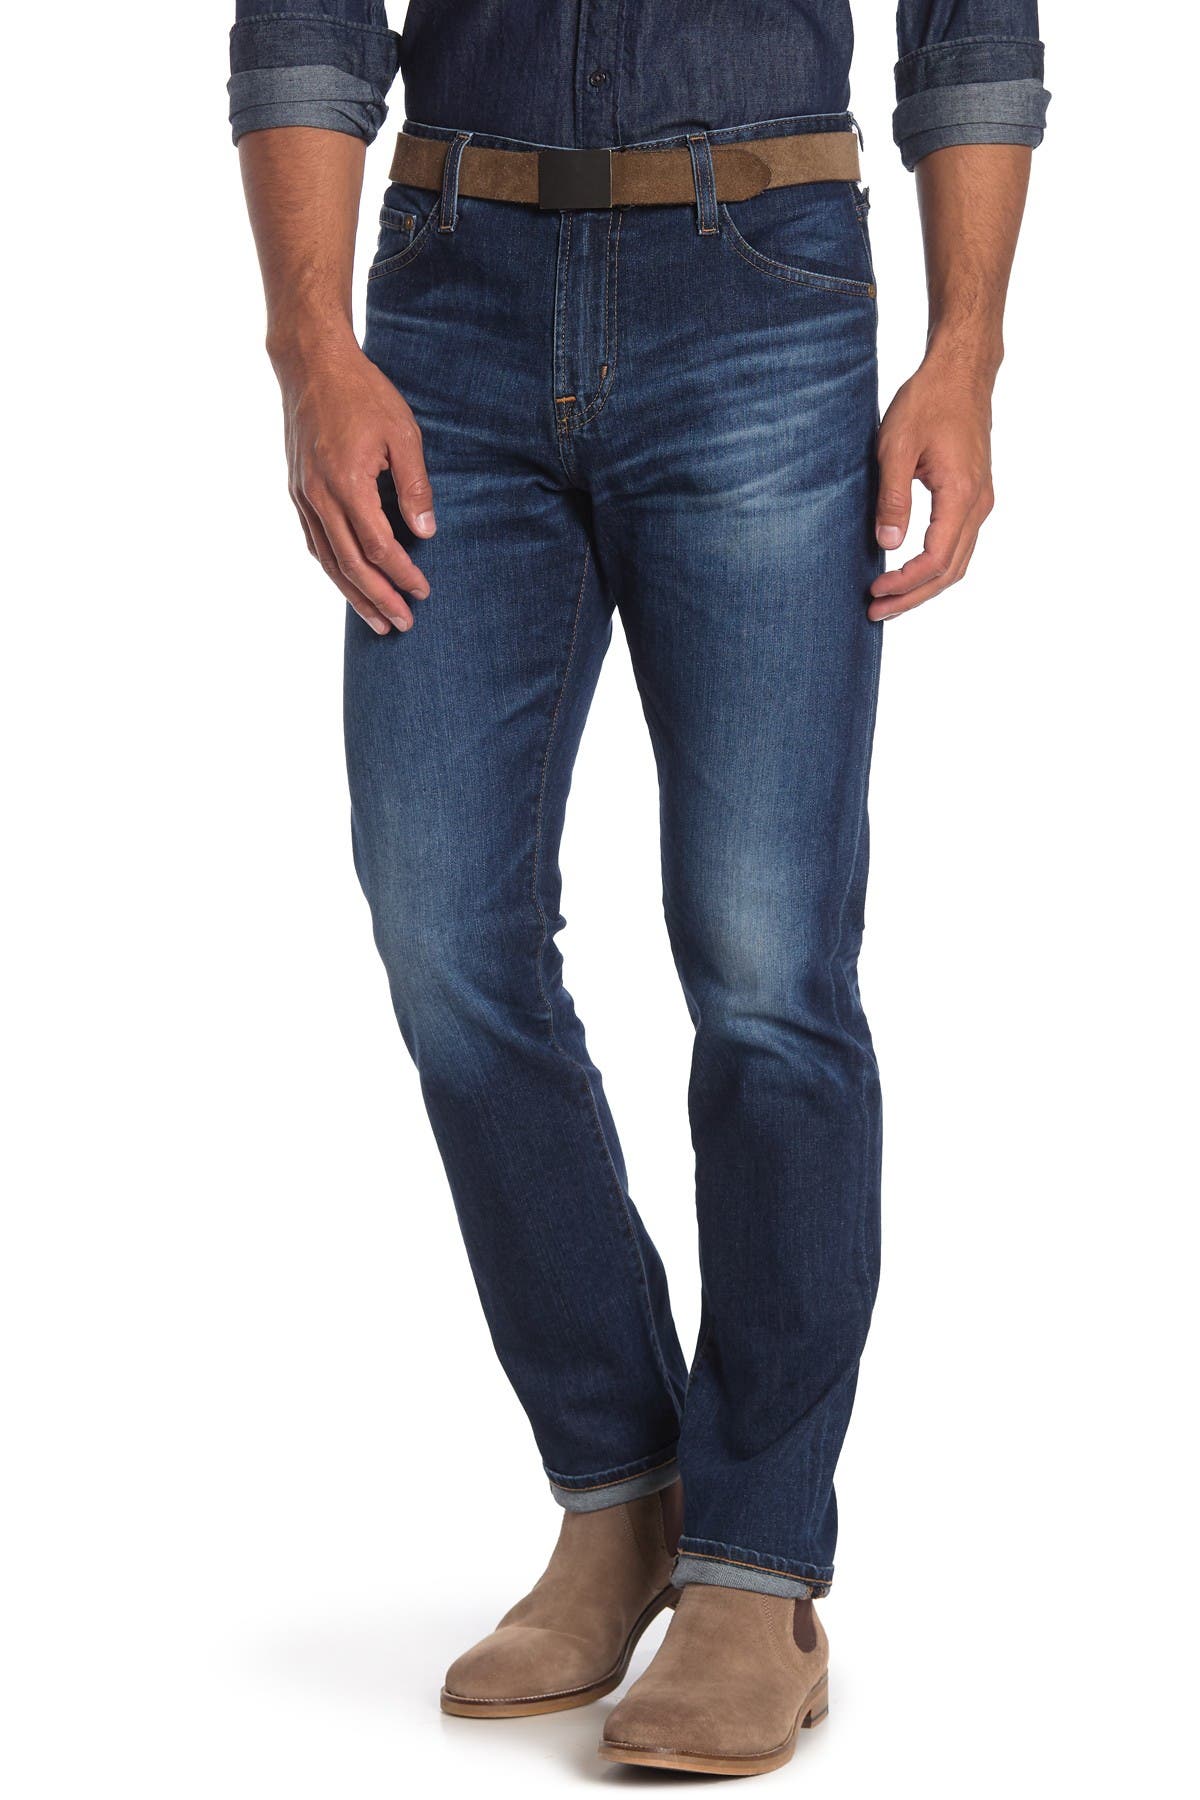 ag the everett jeans